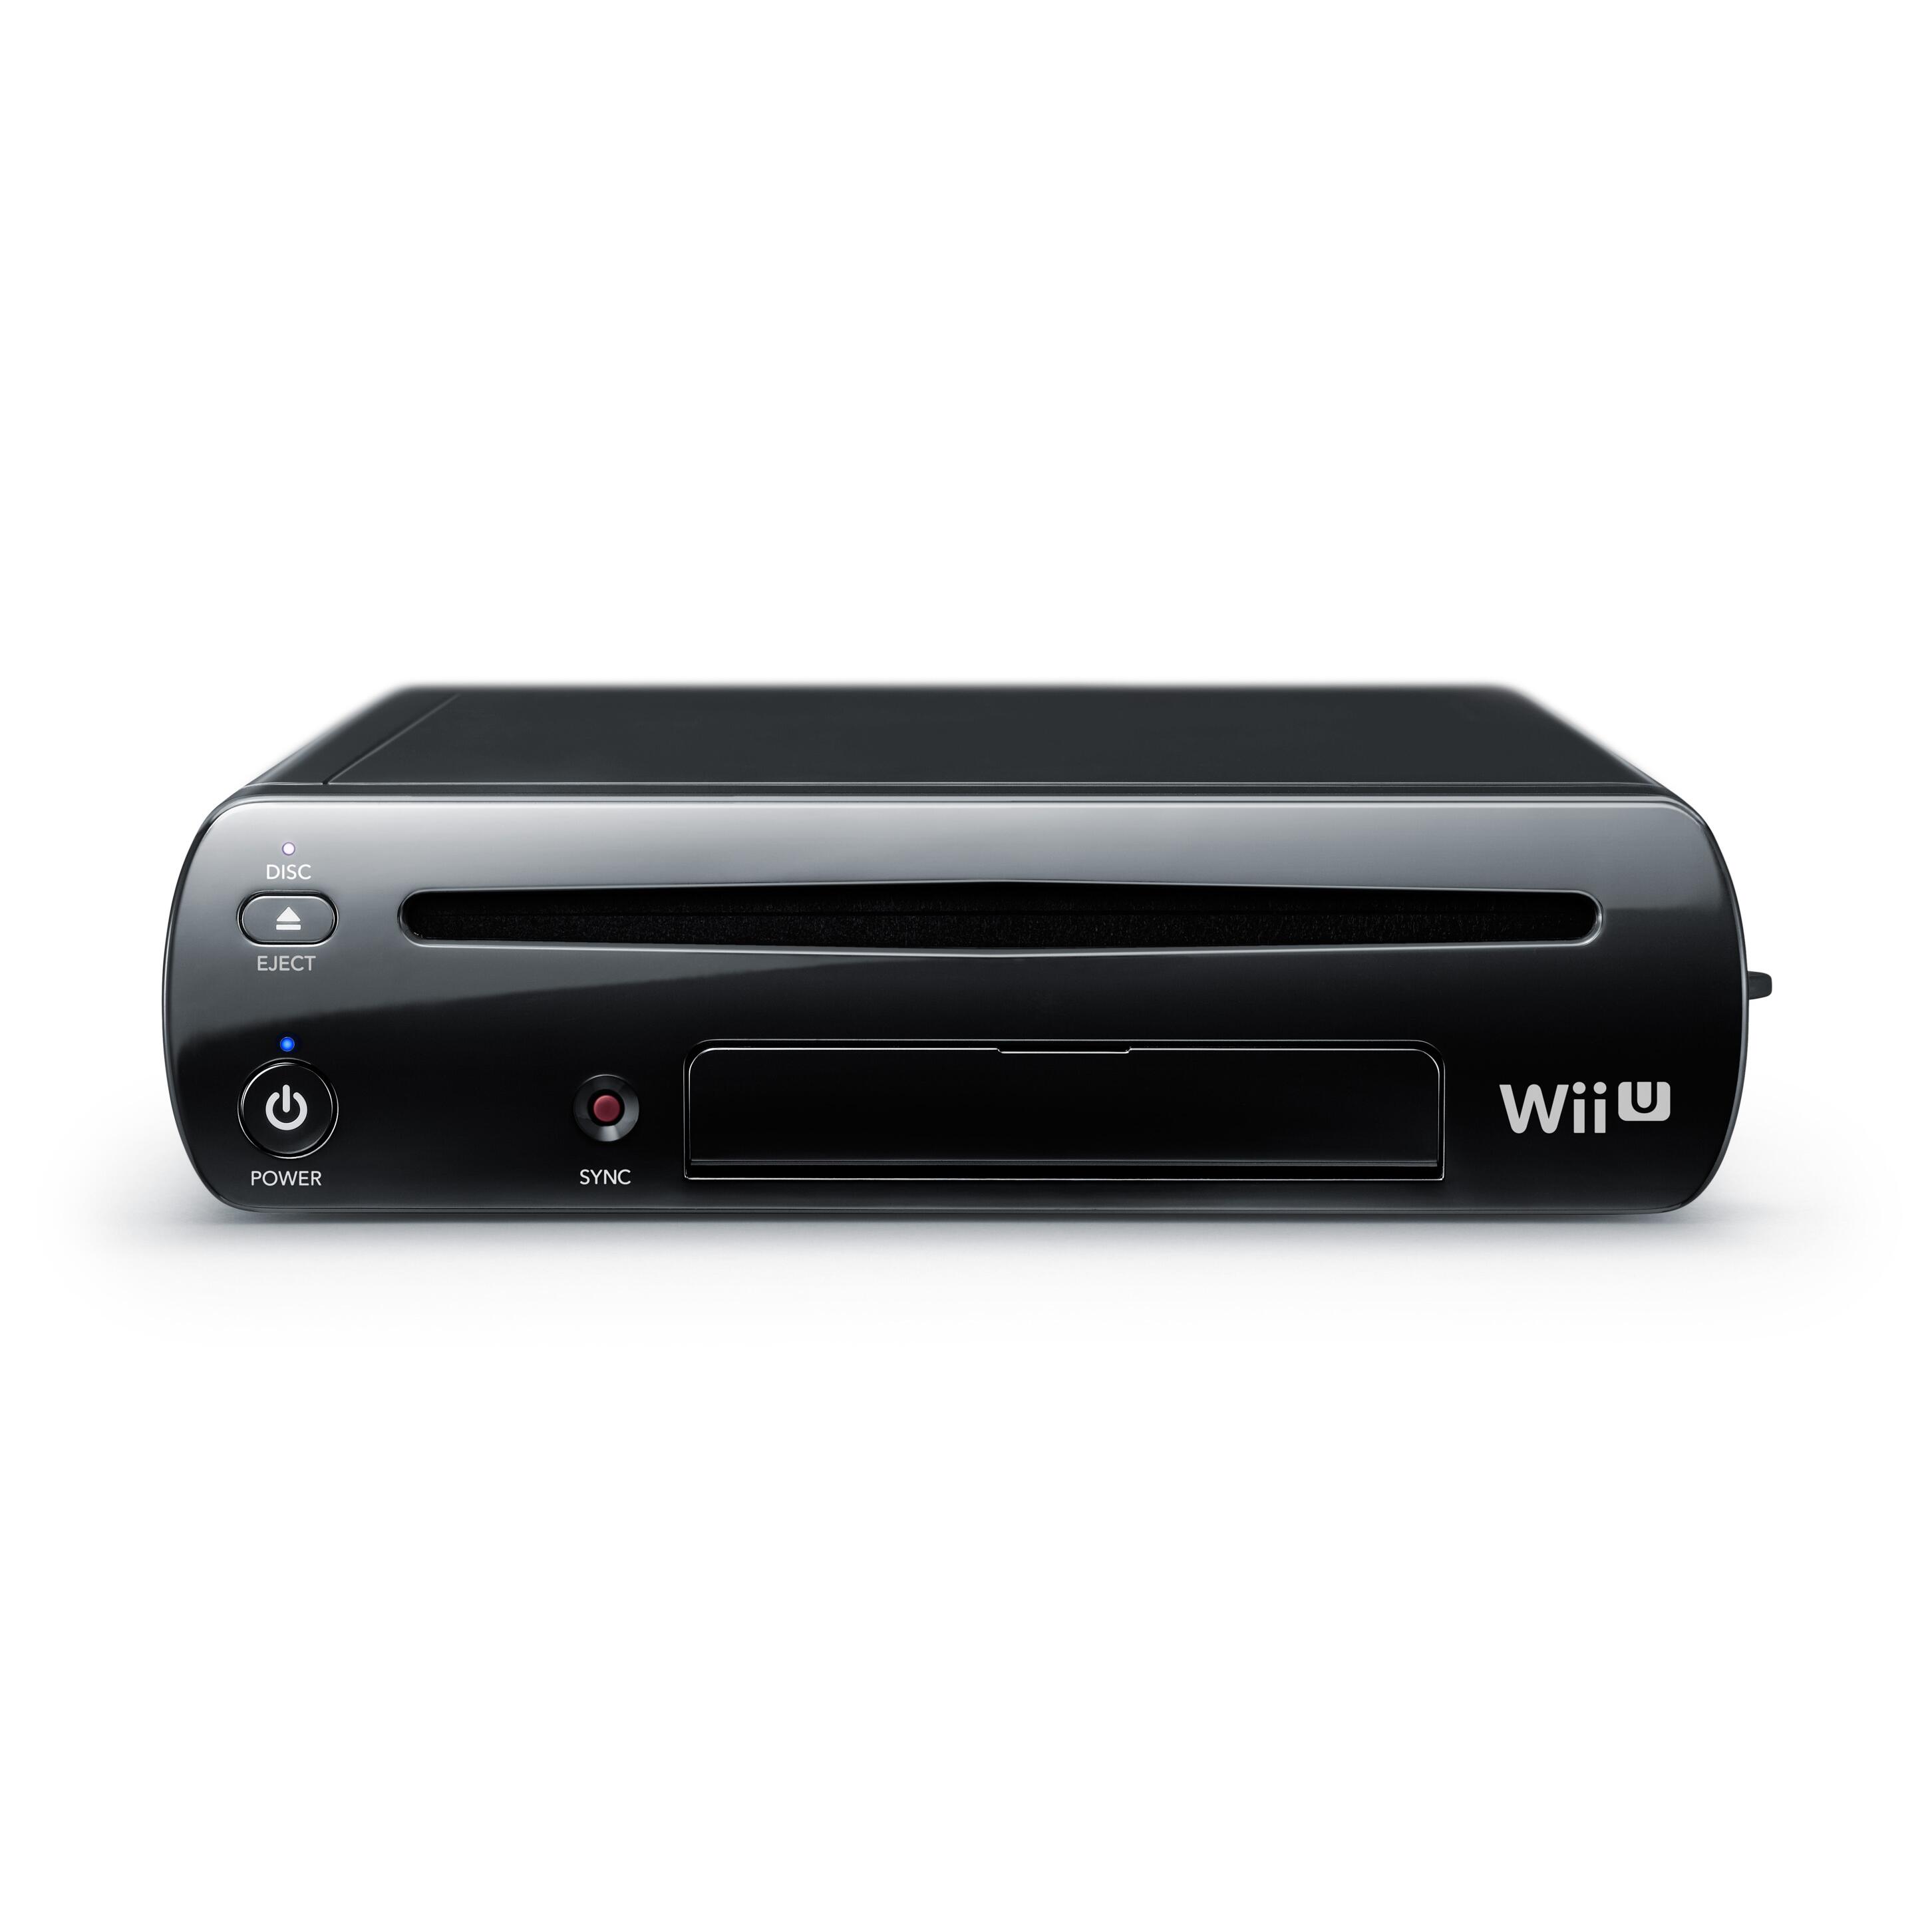 inch Skiën Verduisteren Wii U Console (32GB) - Zwart (Wii) kopen - €73